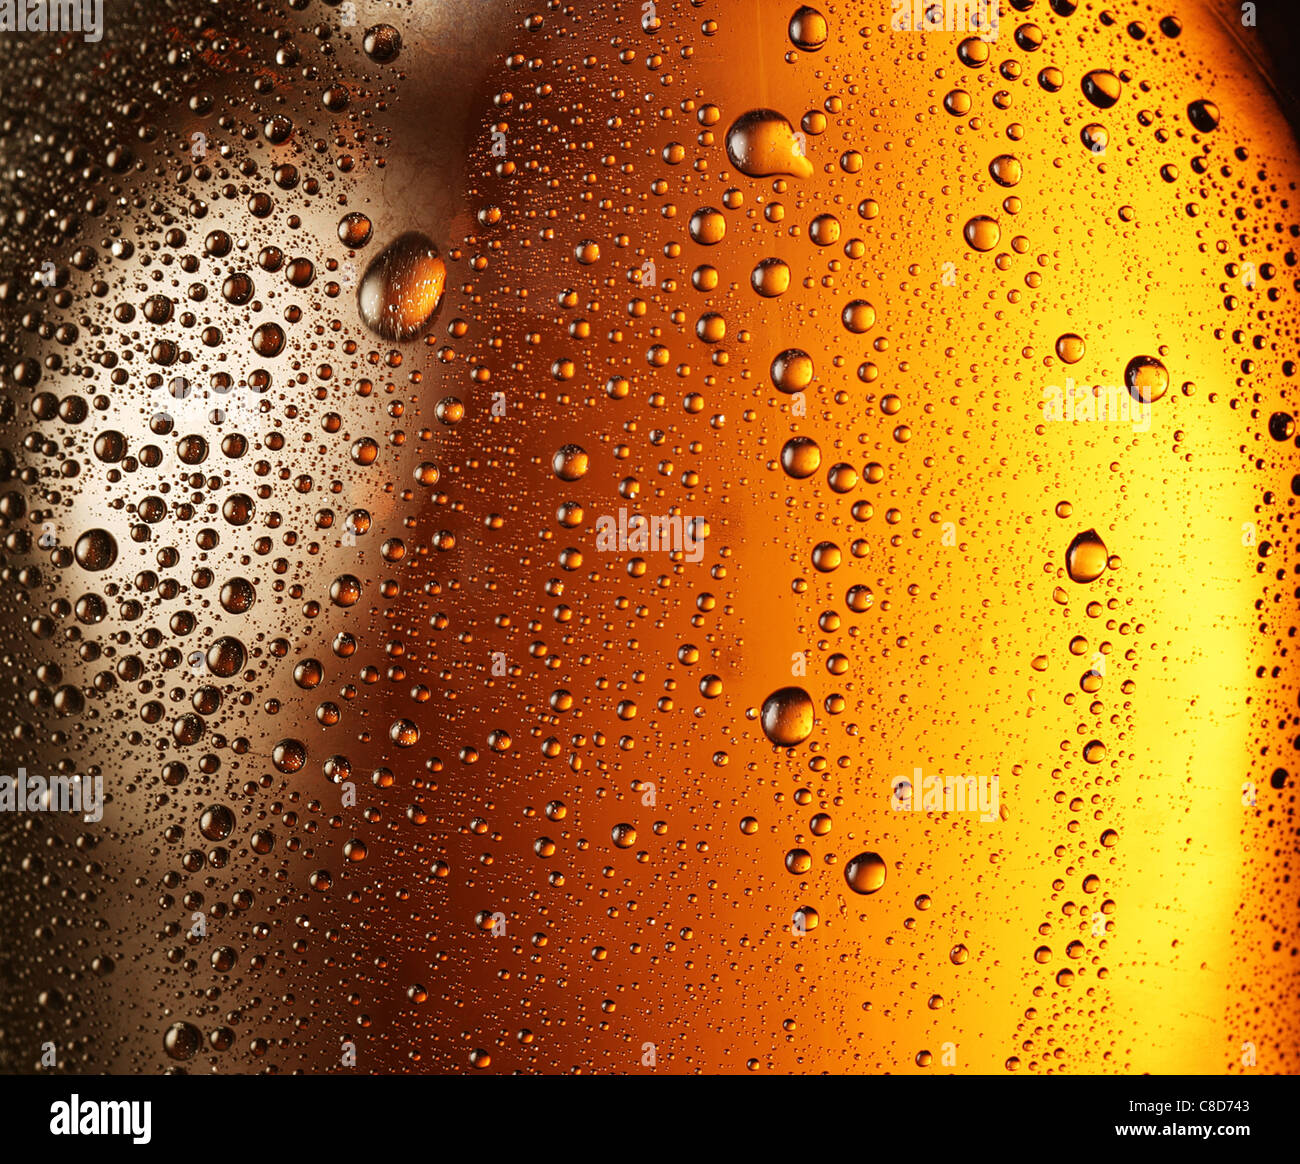 La texture des gouttes d'eau sur la bouteille de bière Photo Stock - Alamy